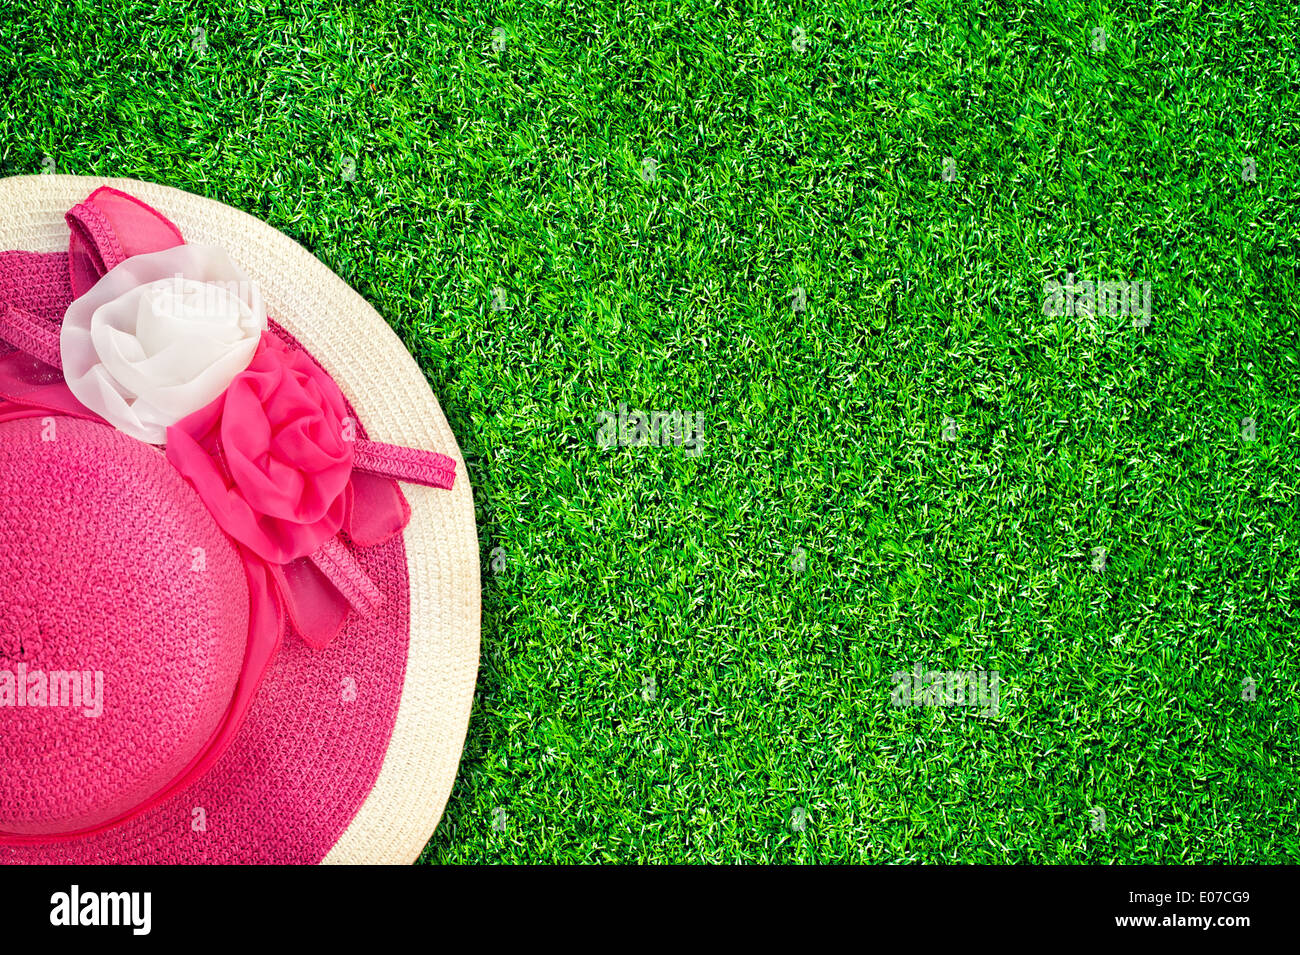 Rosa estate hat con seta rose fiori a una texture verde del giardino di erba. Immagine in stile vintage Foto Stock